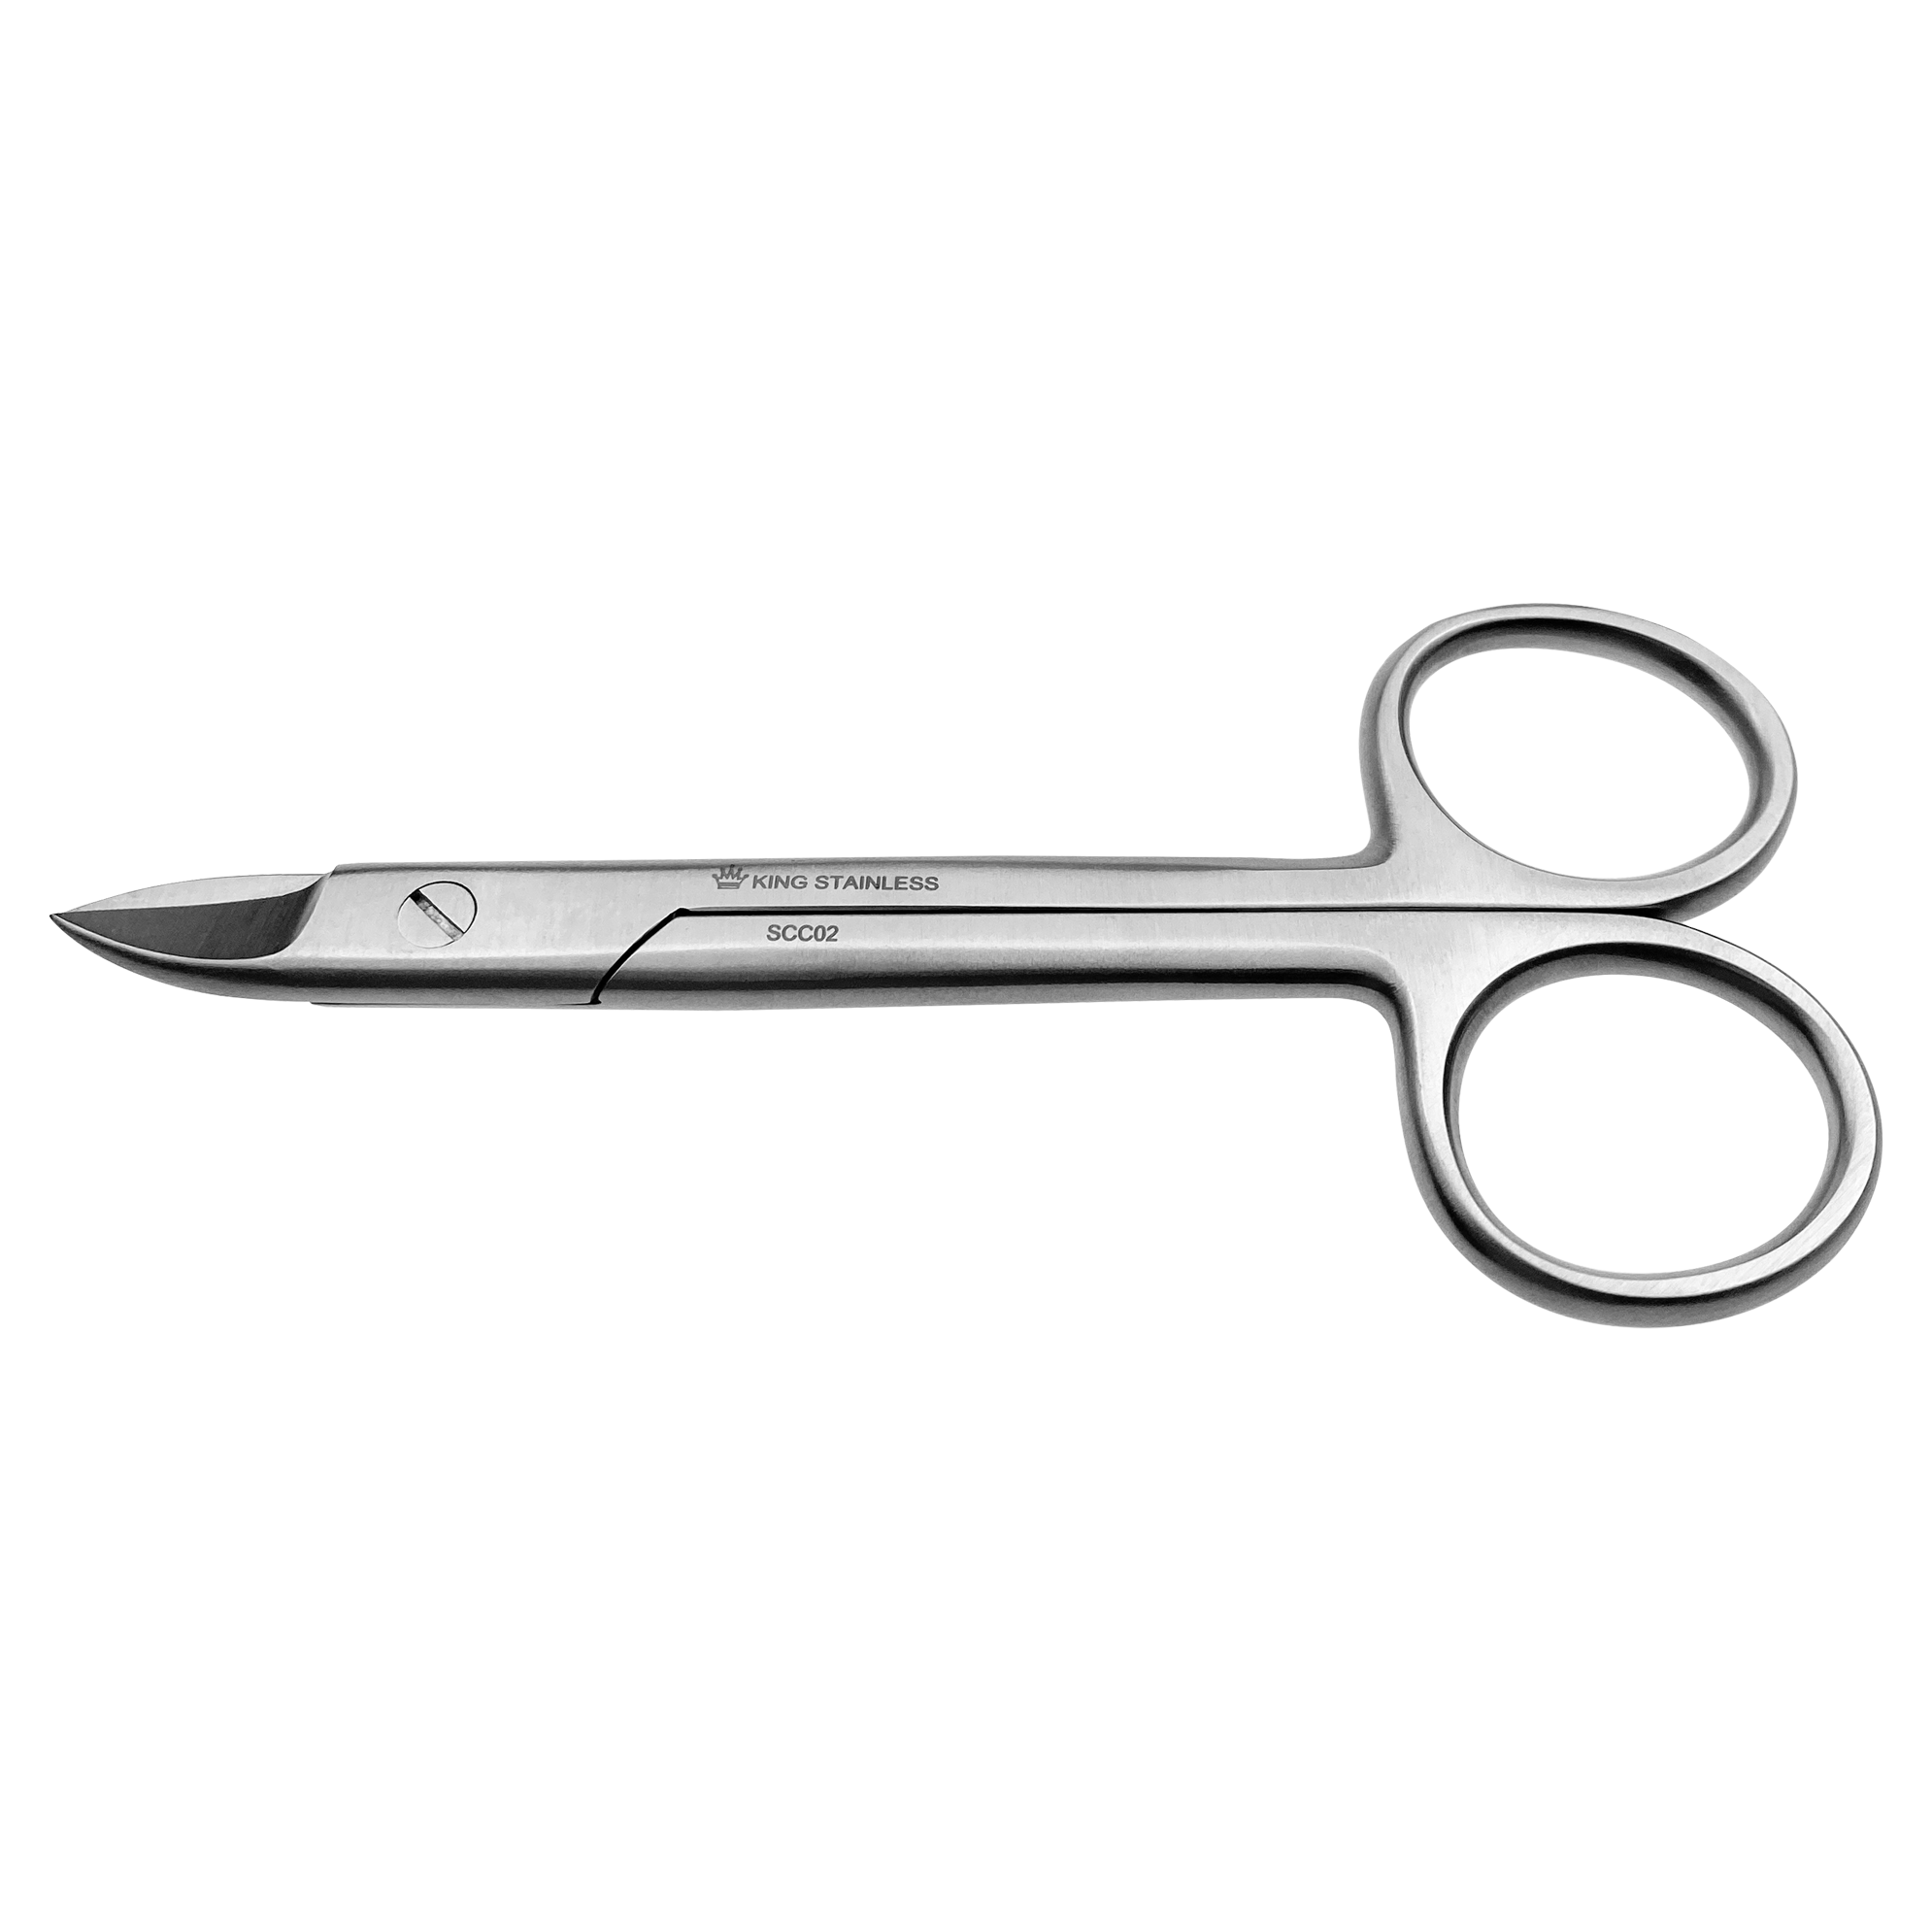 SCC02 (crown scissors)